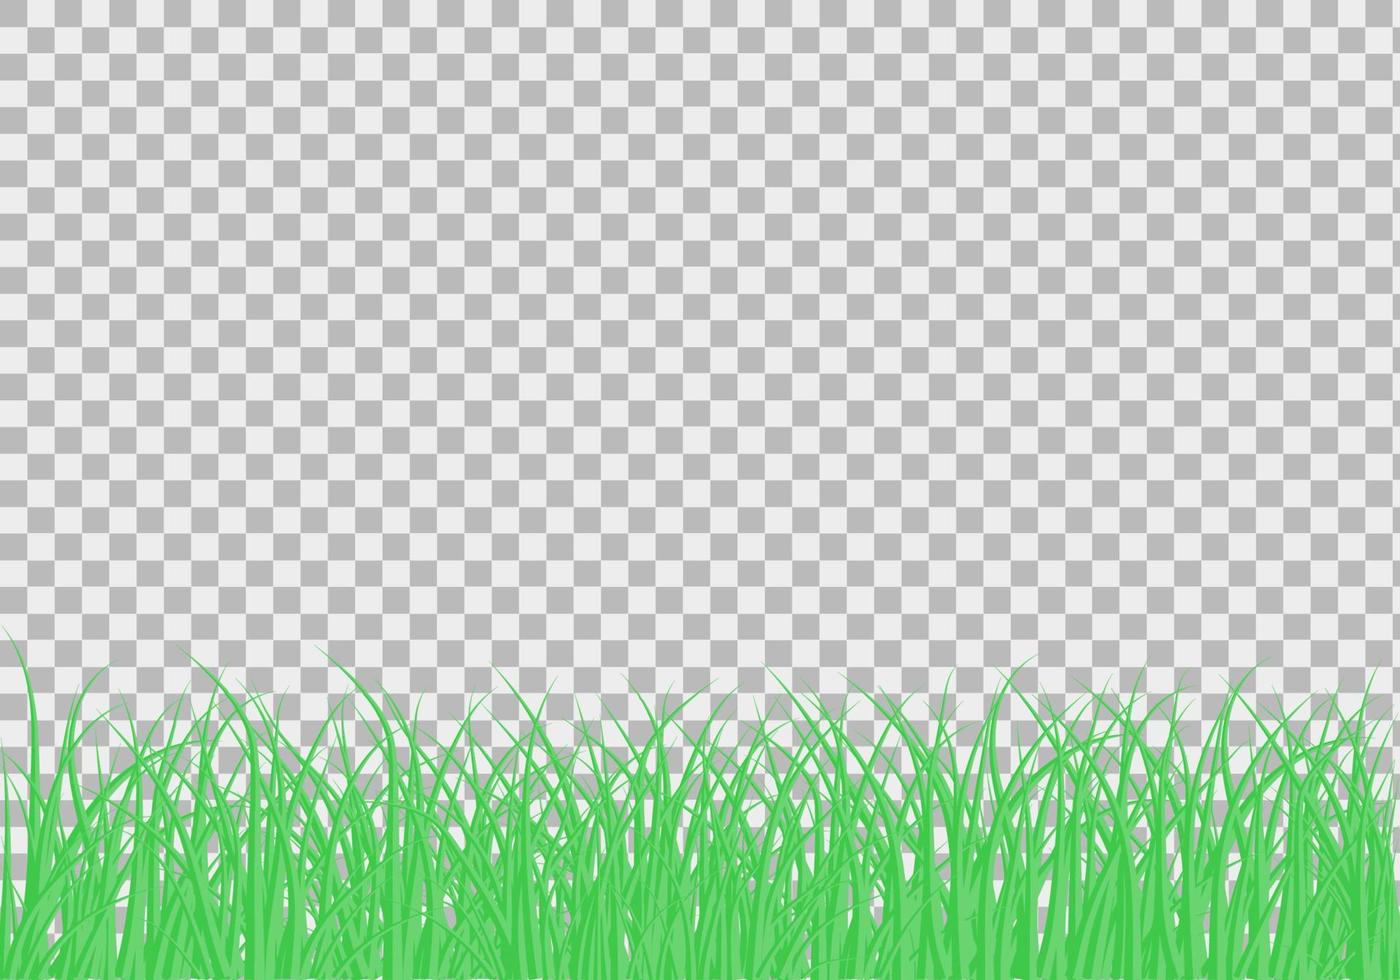 grüne schöne Graswiese Grenze Vektormuster. frühlings- oder sommerpflanzenfeldrasen. Gras Hintergrund. Vektor-Illustration. vektor